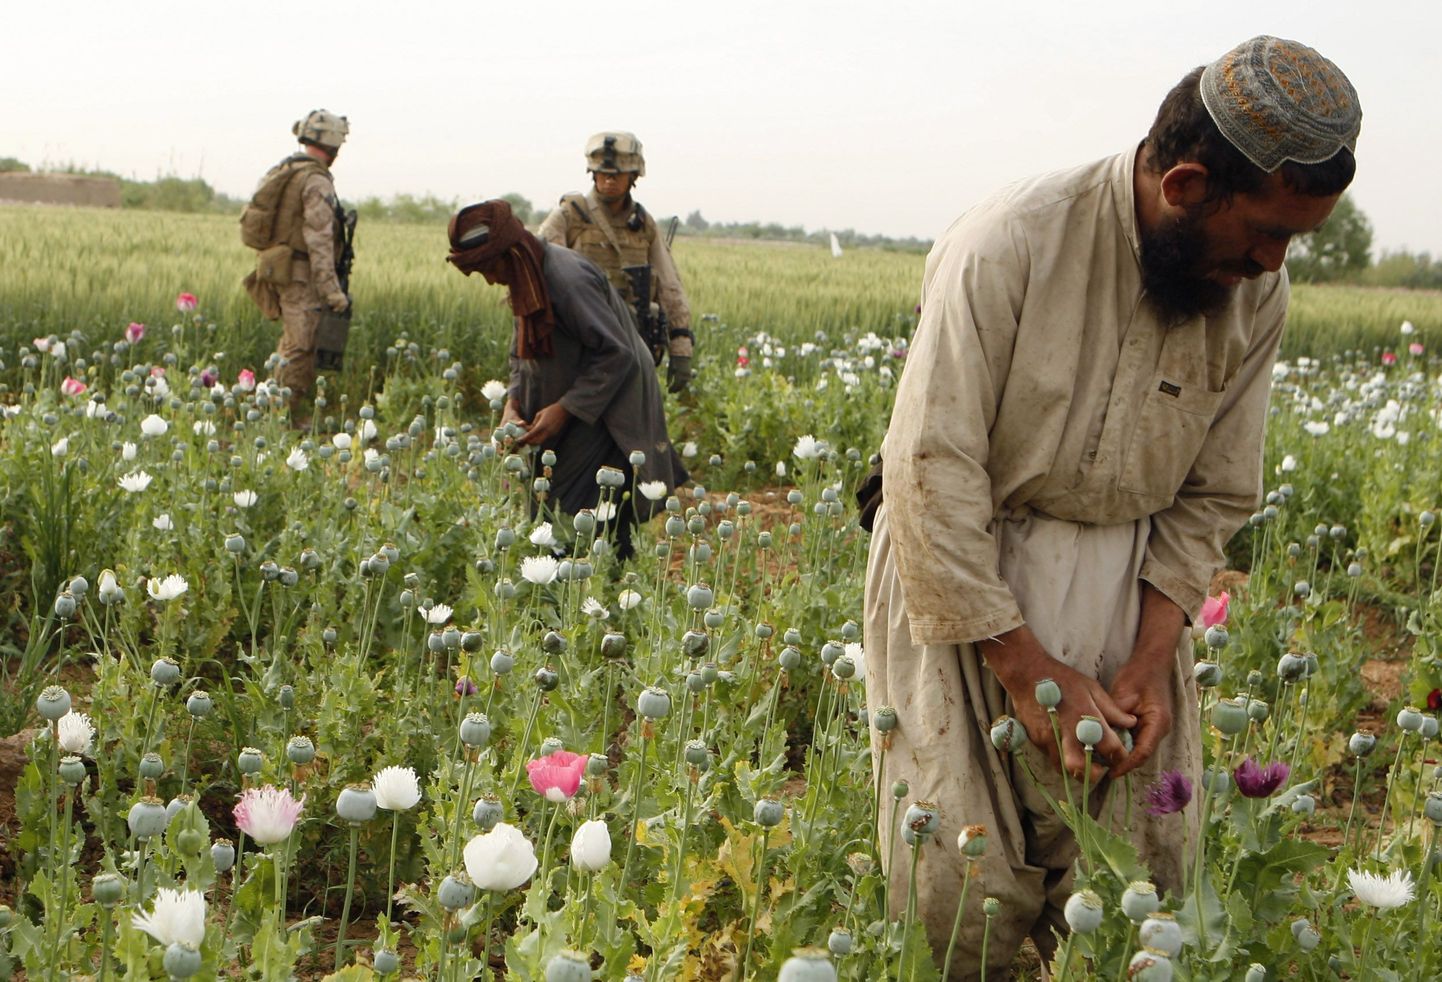 USA merejalaväelased ja kohalikud põllumehed moonipõllul Helmandi provintsis Afganistanis.